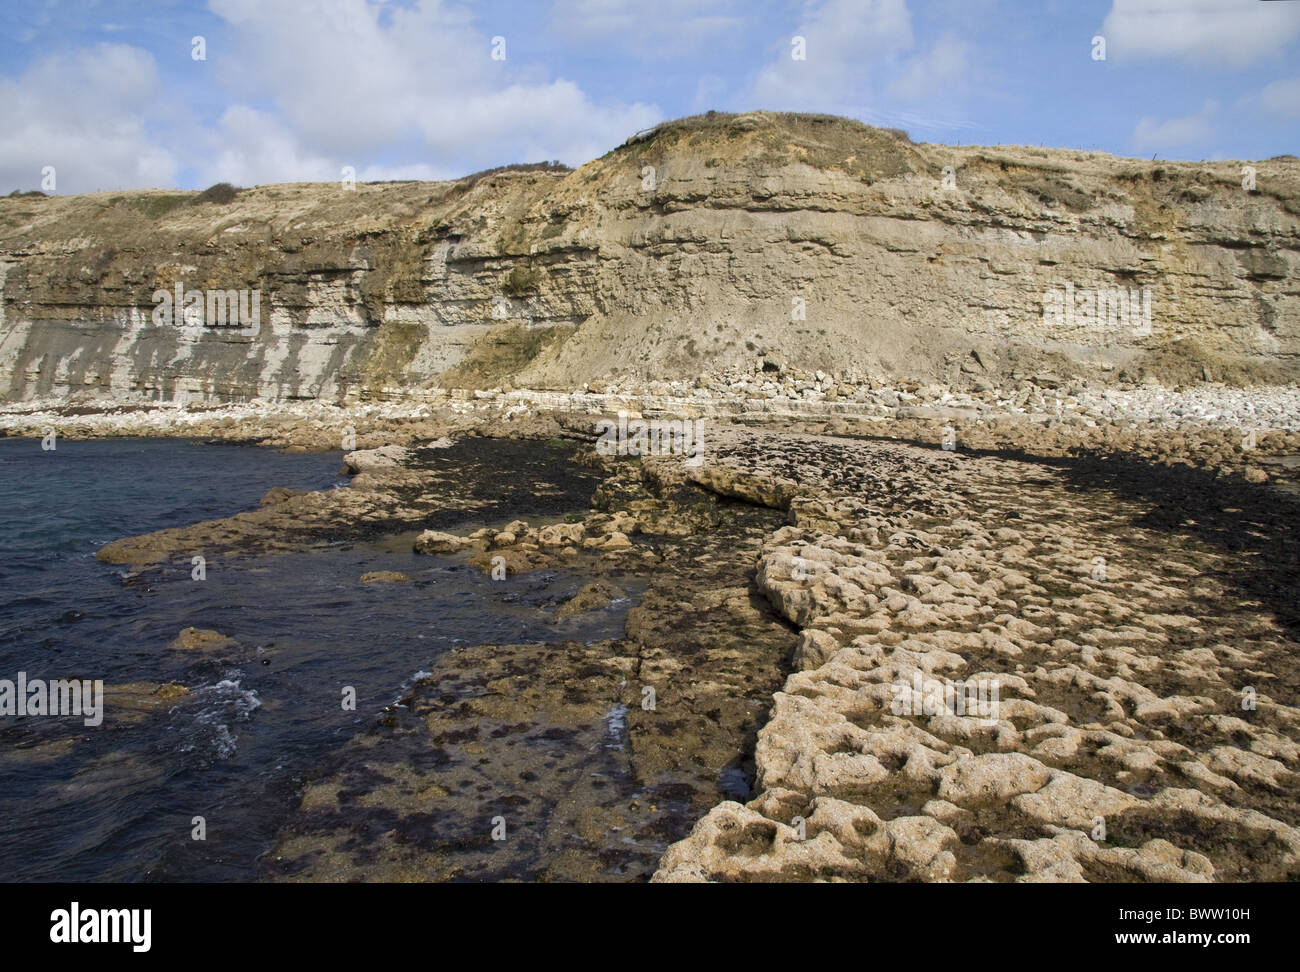 La gran bretagna british Inghilterra geologia inglese geologico costa geologica delle coste marine costiere sito patrimonio mondiale jurassic rock rocce Foto Stock